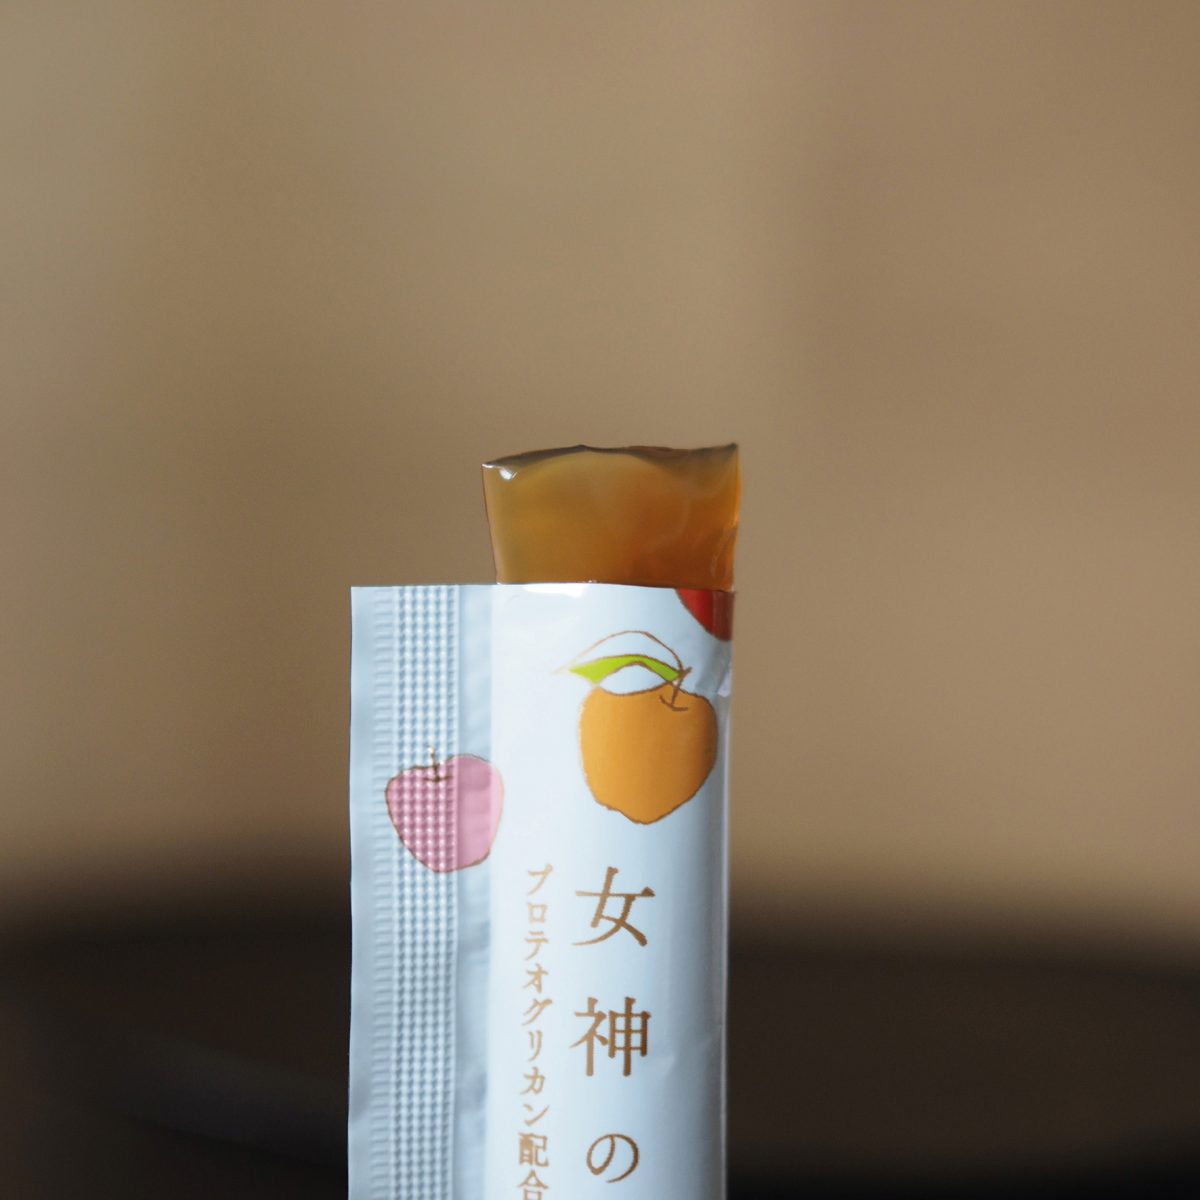 Kanesho 林檎女神蘋果醋果凍 (10g x 7包)